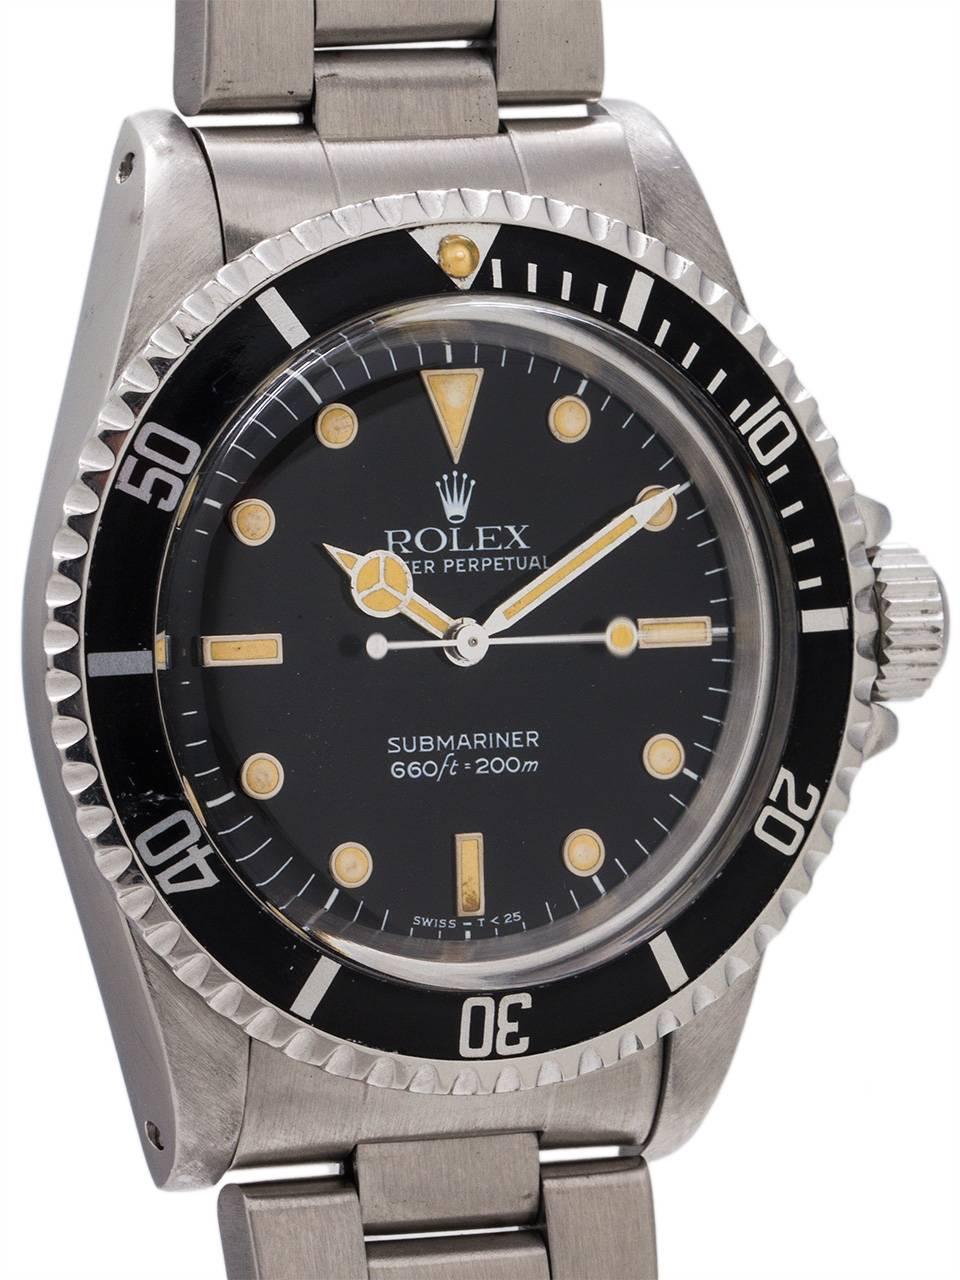 Modern Rolex Stainless Steel Submariner Self Winding Wristwatch Ref 5513, circa 1988